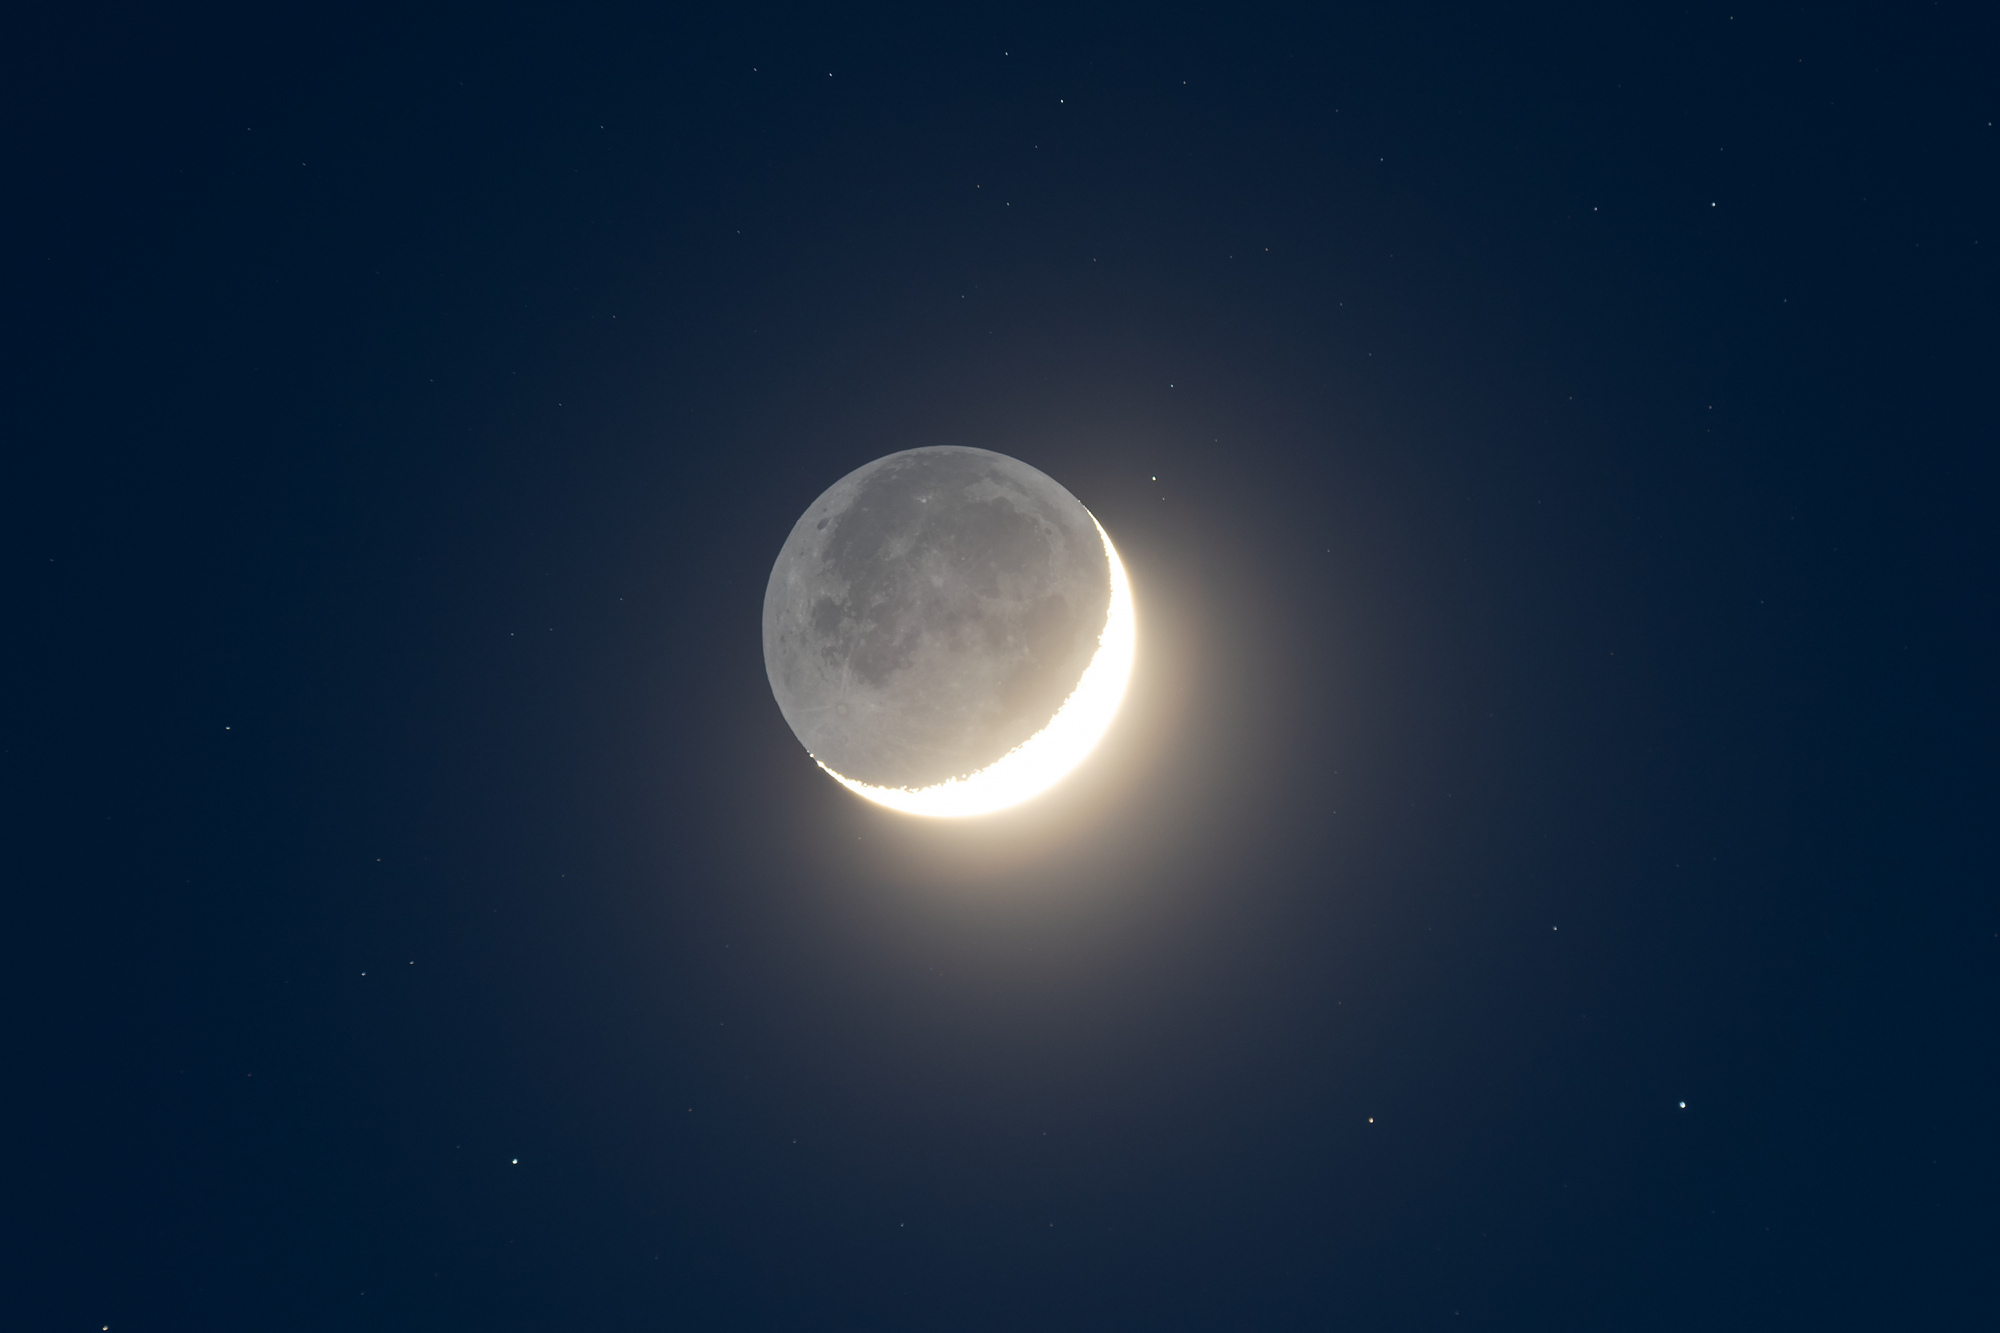 Lune-cendree-TS71-100ISO.thumb.jpg.8e6468ed71e5a44963fe0eedcf78645b.jpg